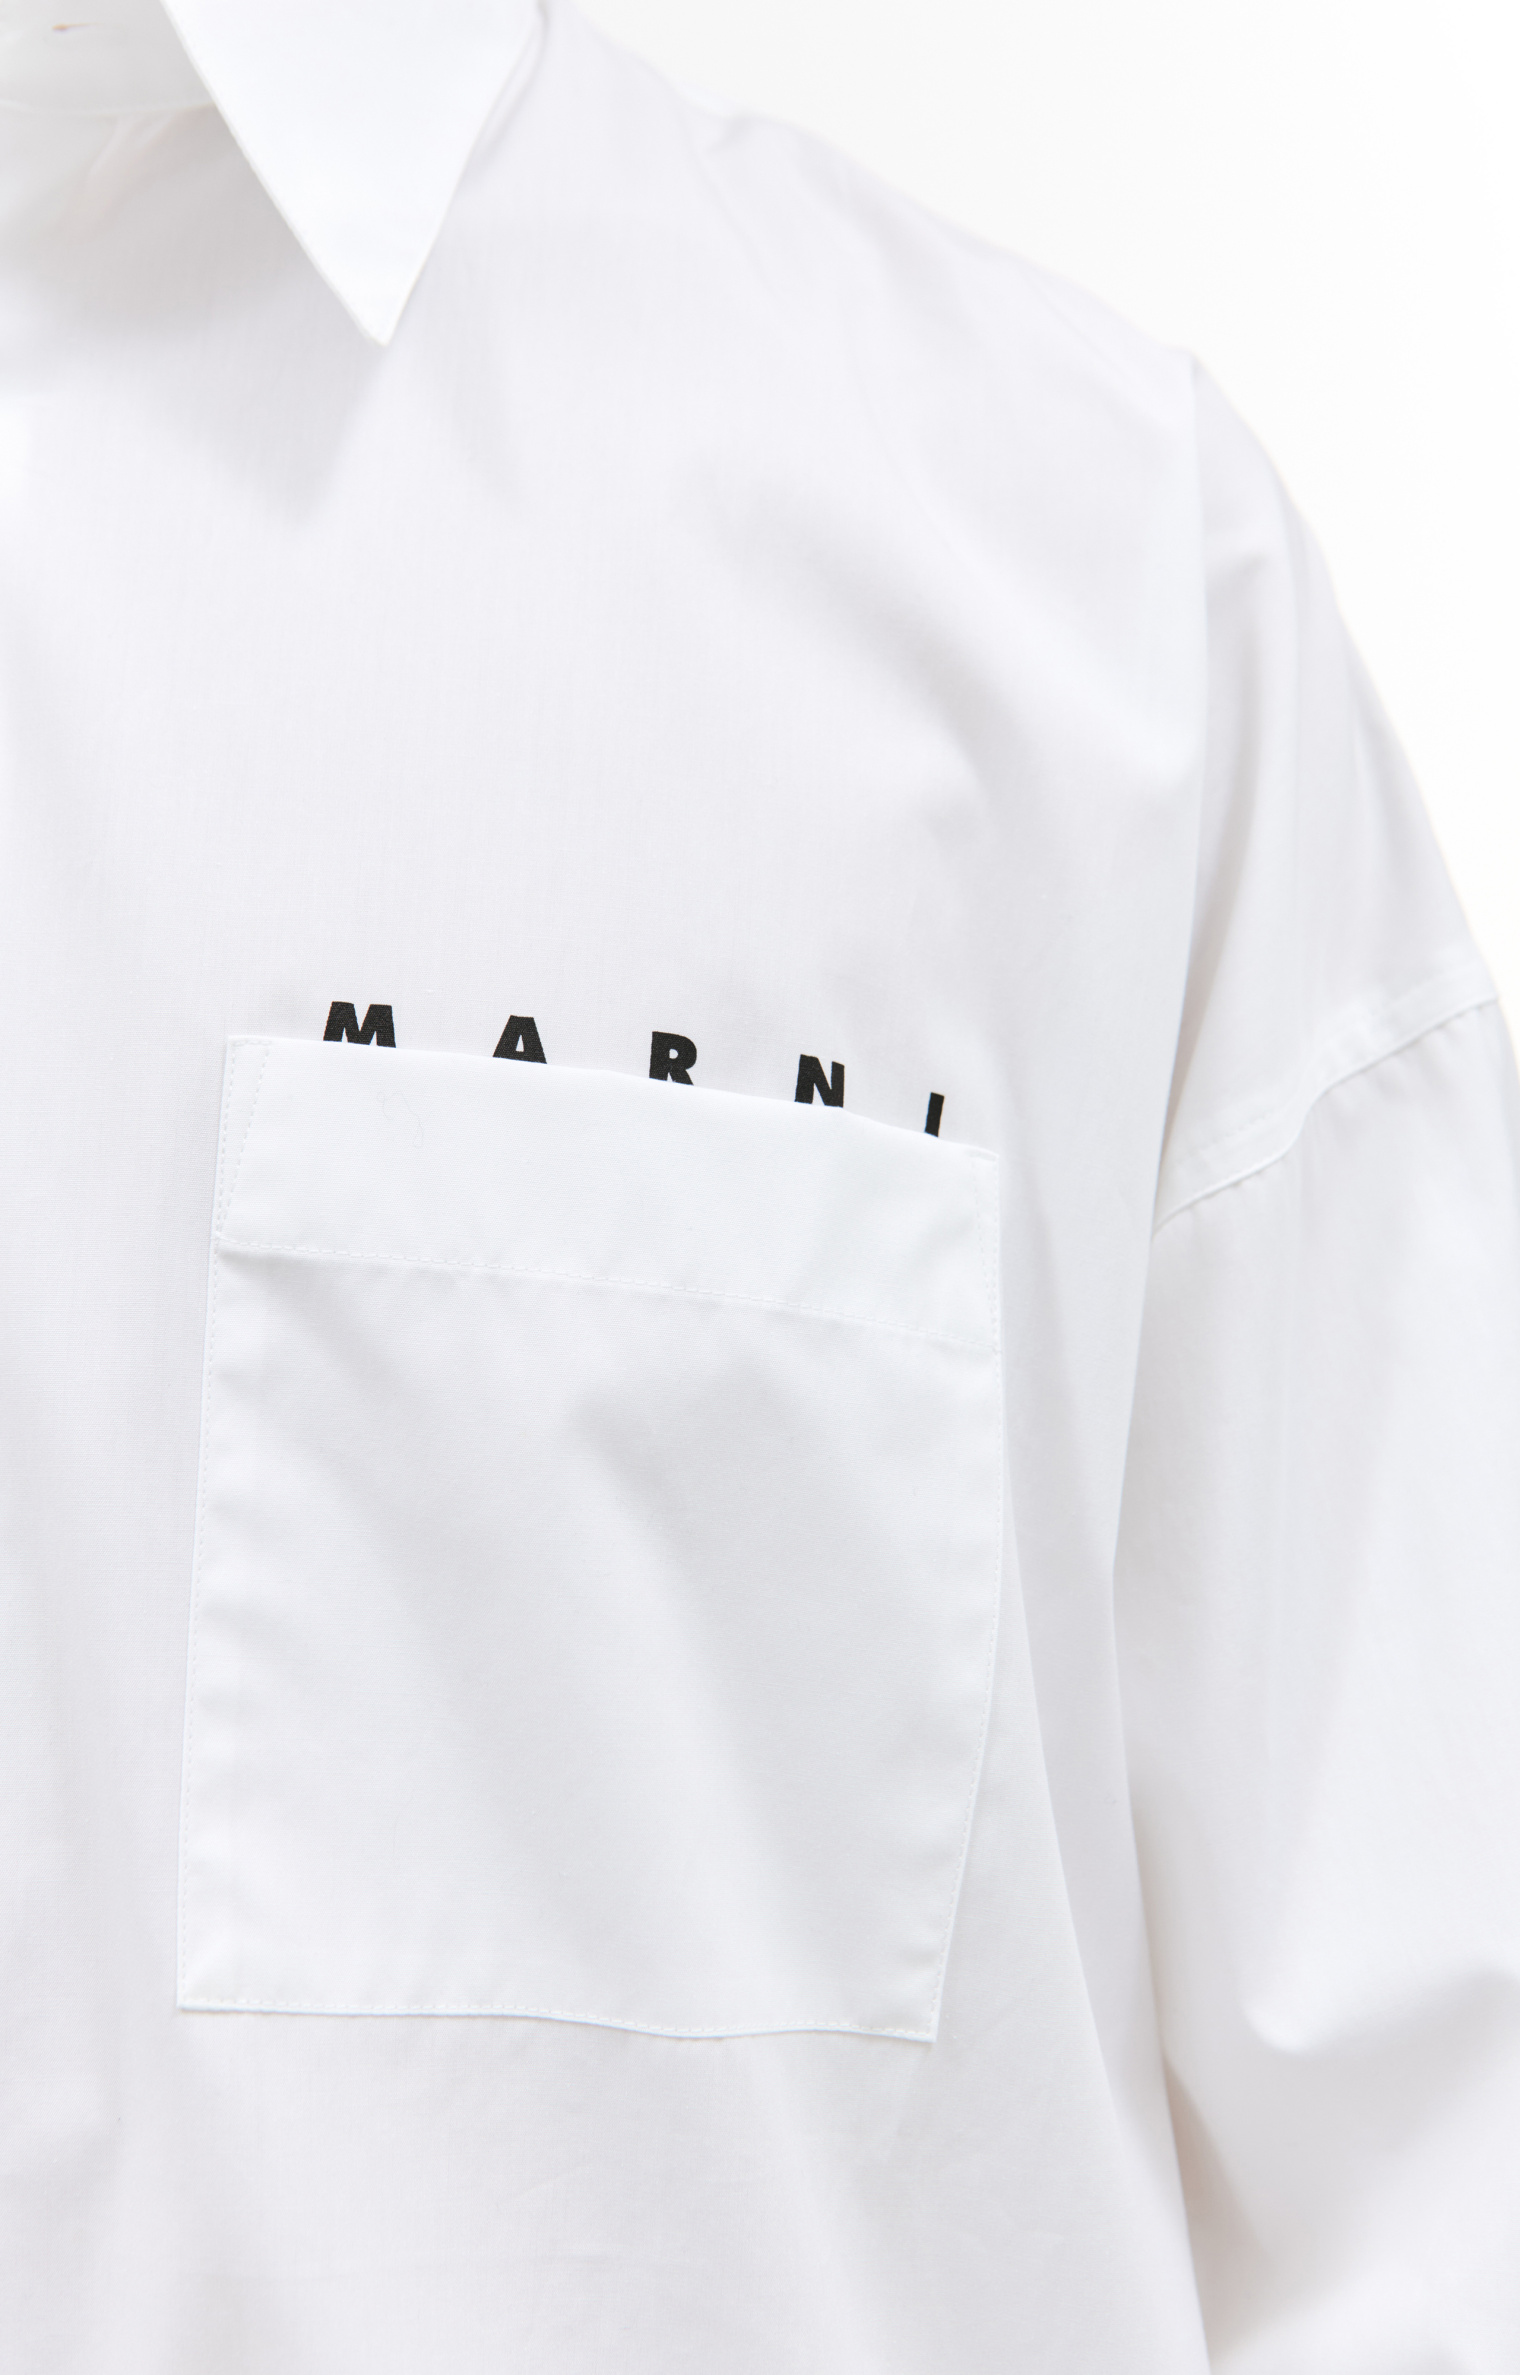 Marni White cotton shirt